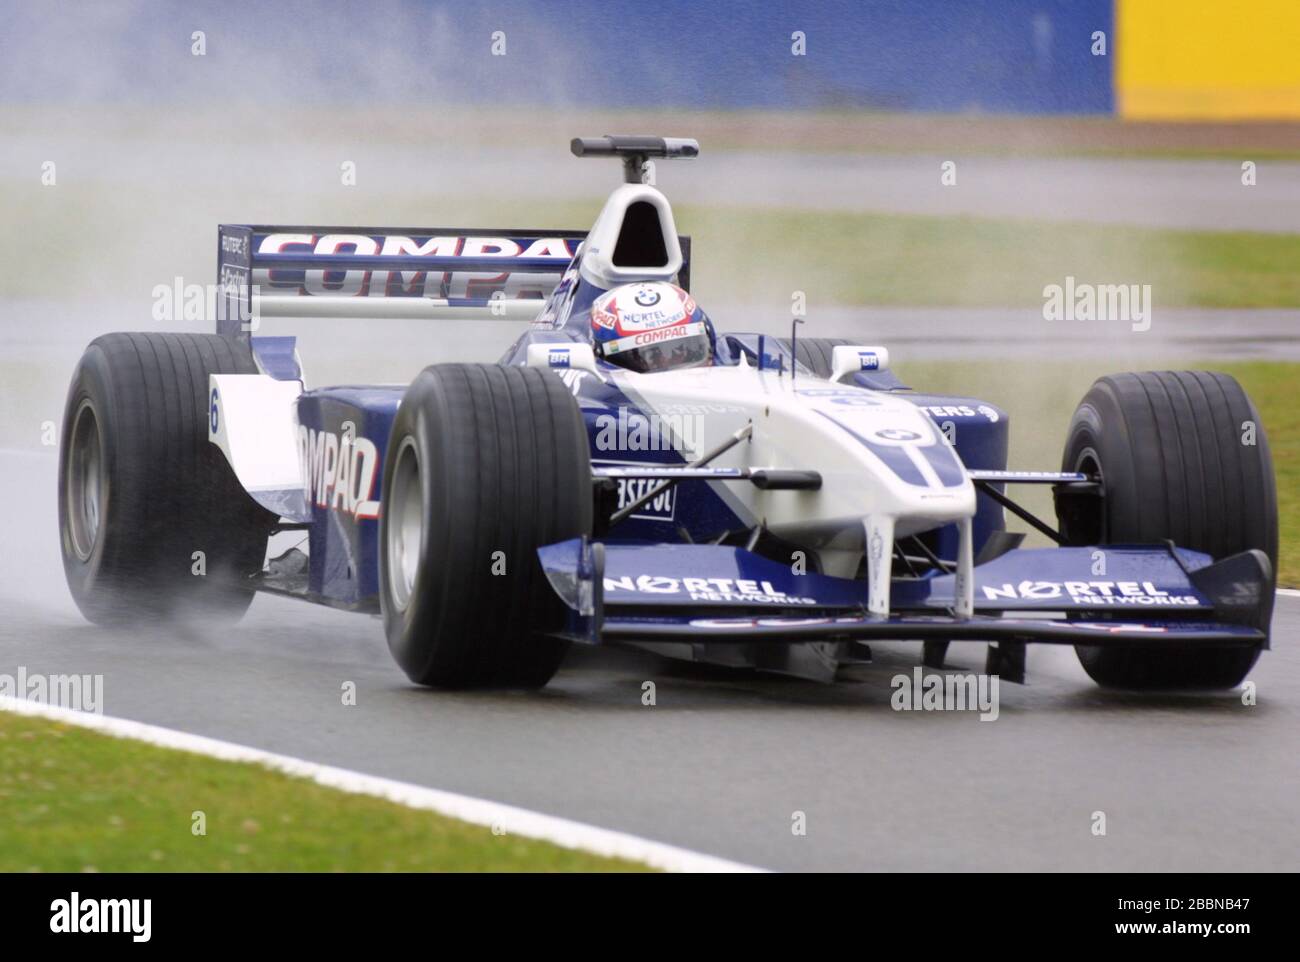 Juan Pablo Montoya Williams-BMW during British Grand Prix at Silverstone Circuit on 17/07/2001 Stock Photo